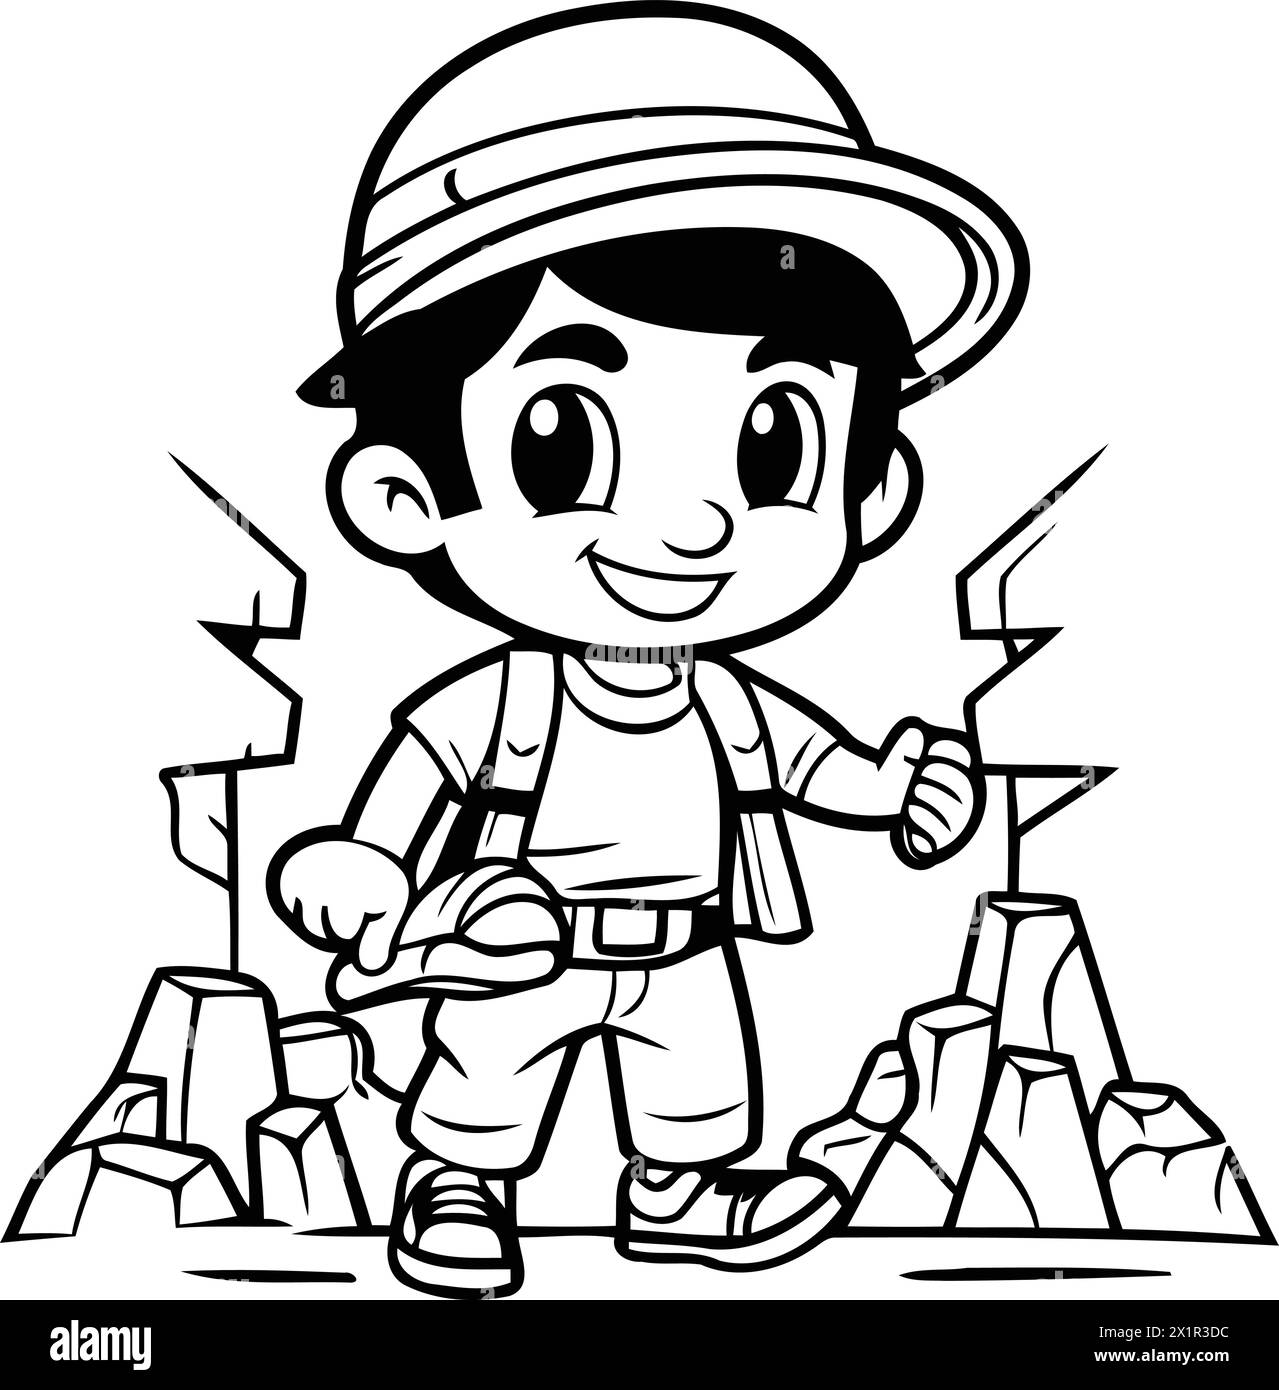 Garçon explorateur de dessins animés avec une carte au trésor. Illustration vectorielle.eps10 Illustration de Vecteur